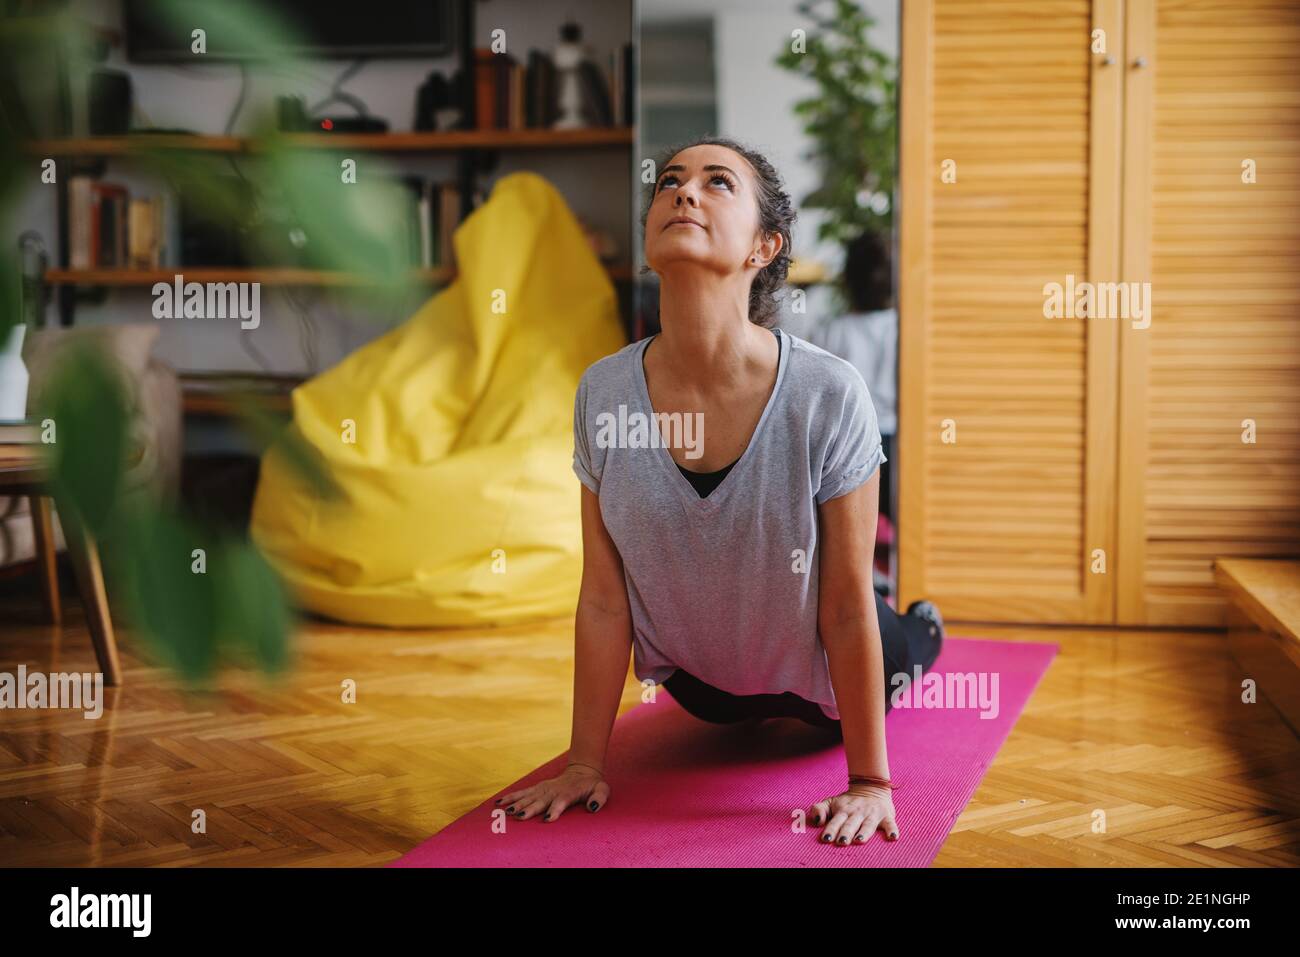 Frau macht Yoga-Übungen auf der Matte. Cobra-Pose. Wohnzimmer innen. Stockfoto